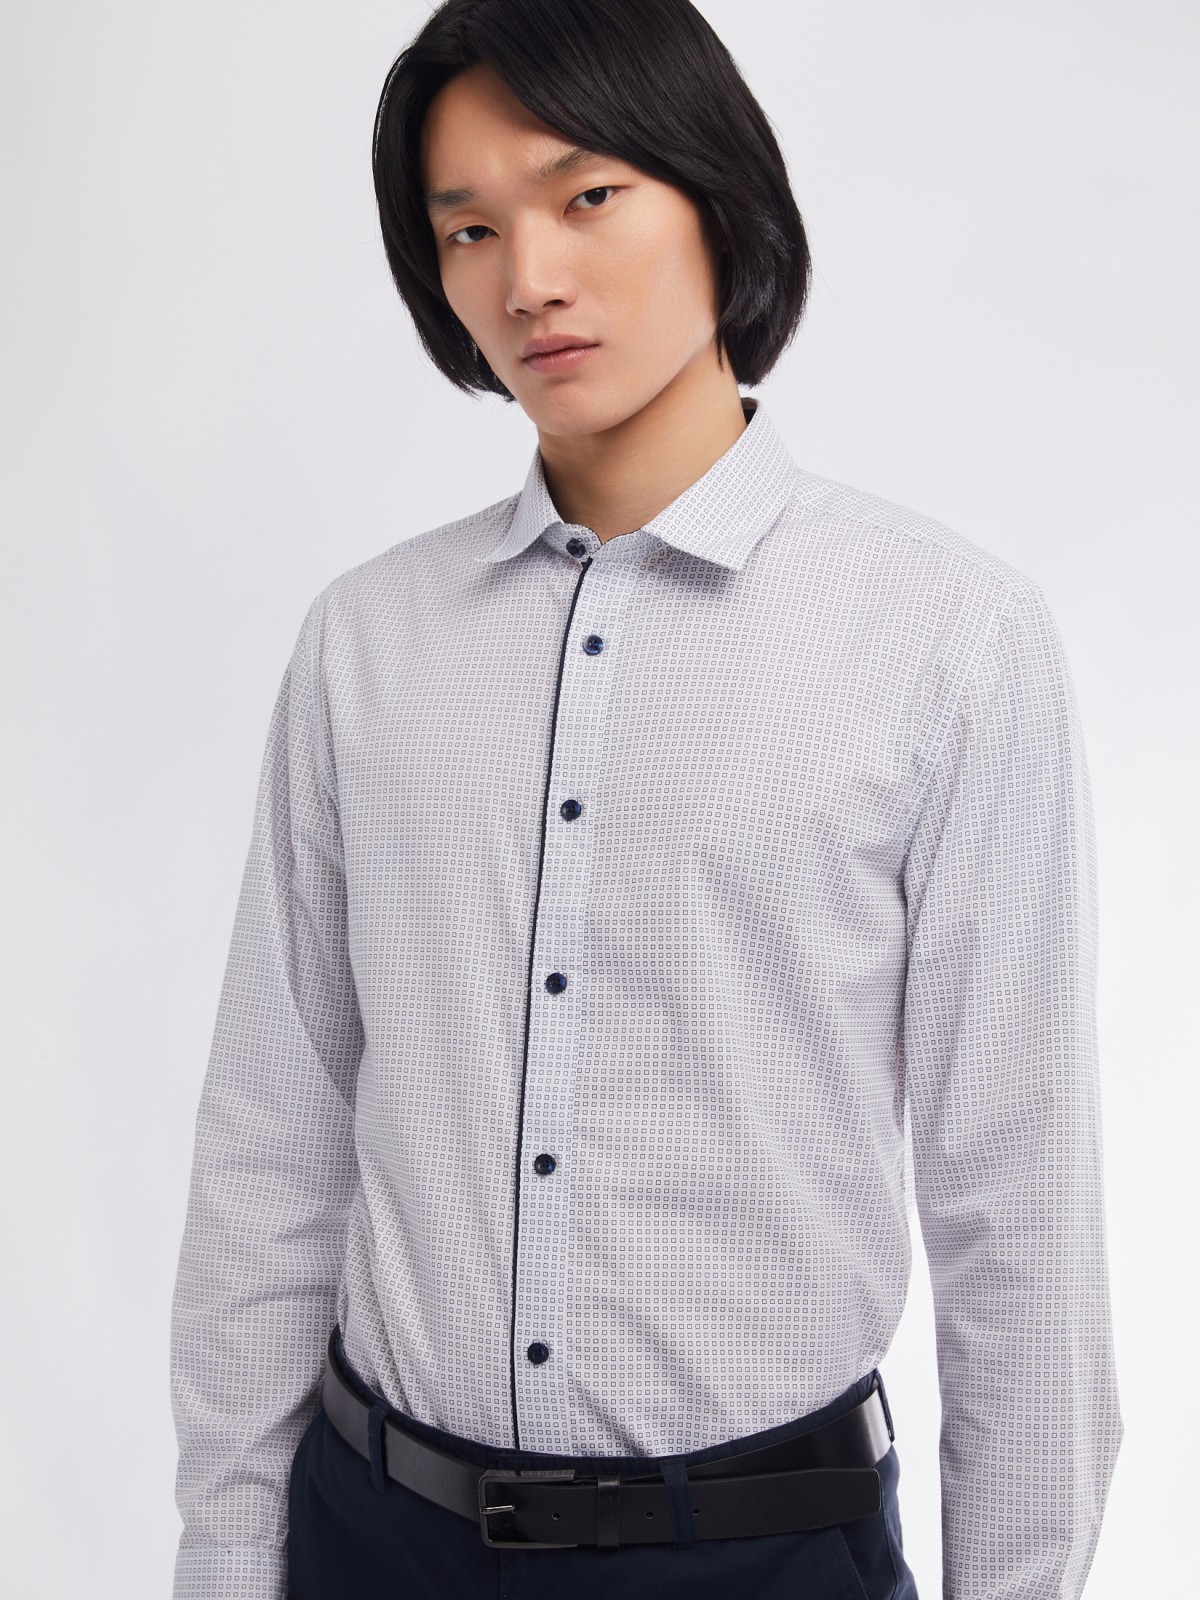 Офисная полуприталенная рубашка с мелким принтом zolla 01411217Y033, цвет белый, размер M - фото 1